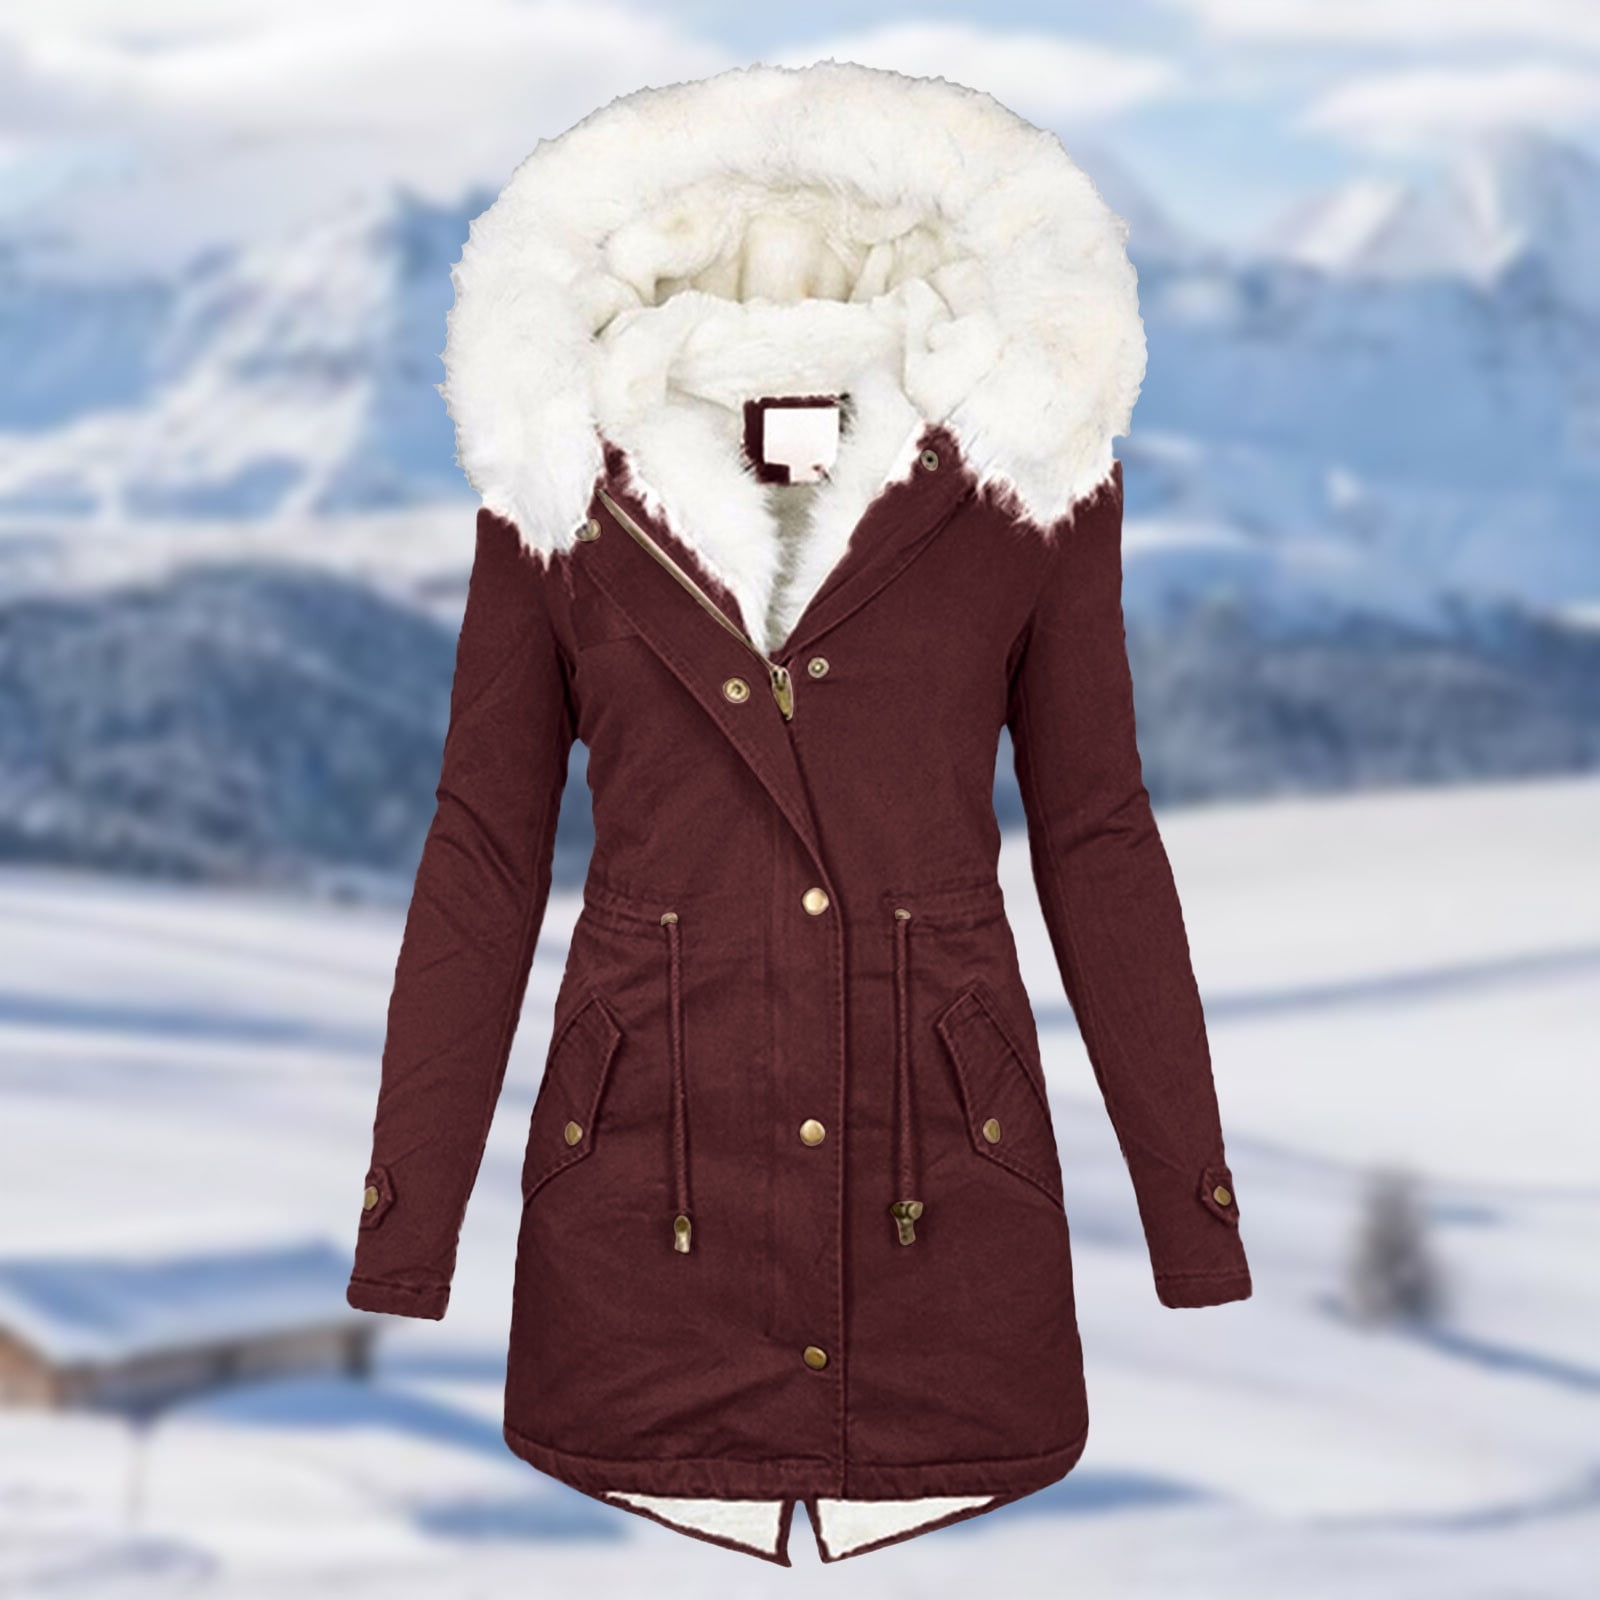 Jacket Denim Trench Parka Outwear US Winter Women Warm Collar Hooded Long Coat